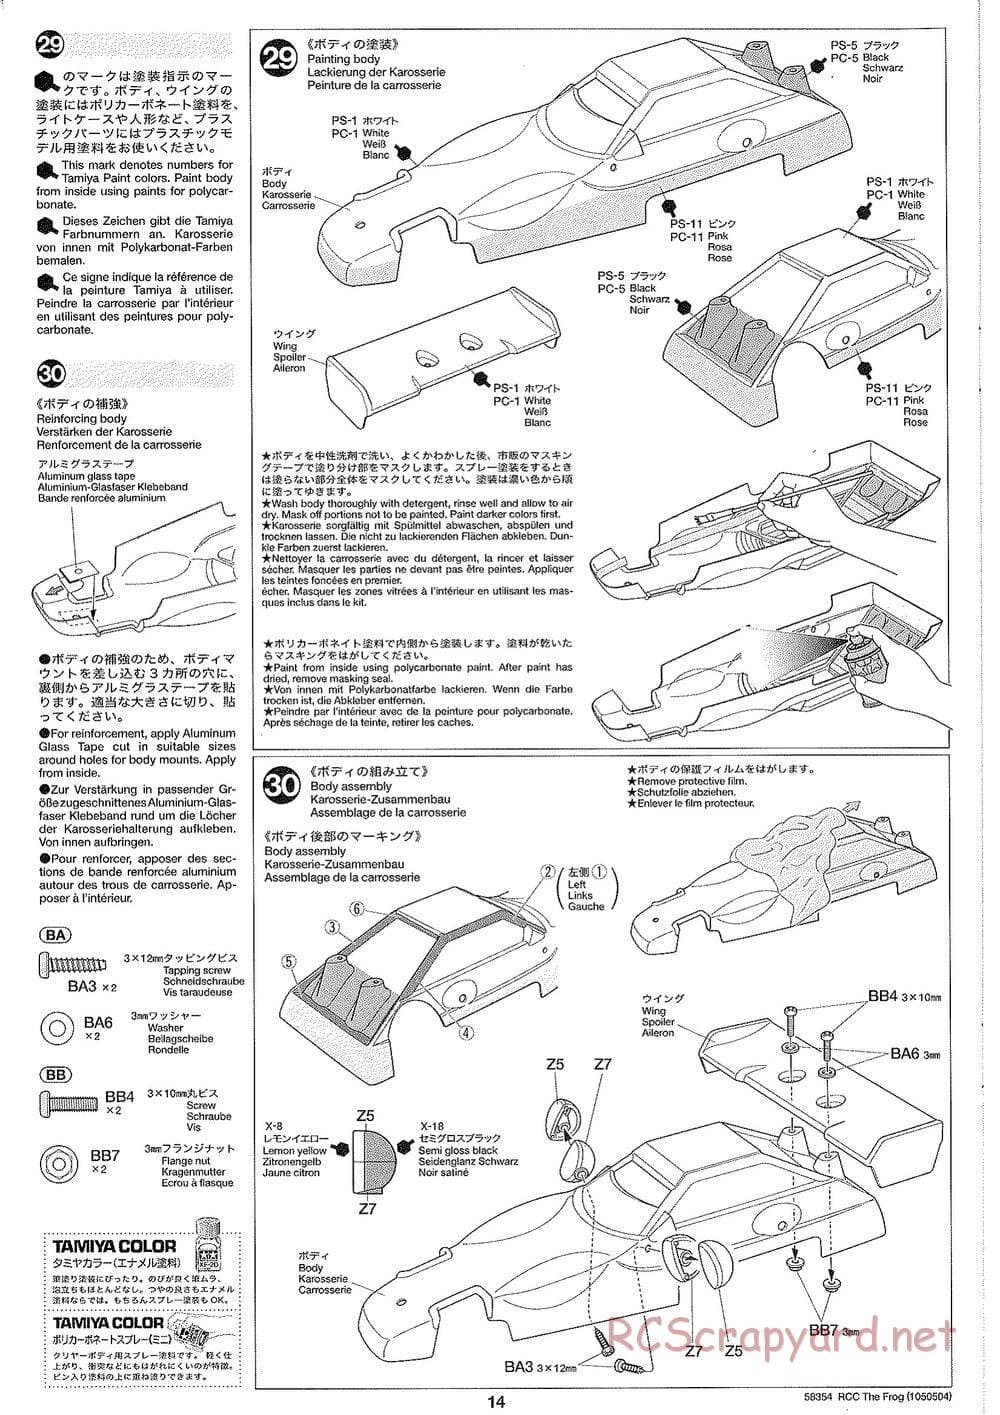 Tamiya - The Frog - 2005 - ORV Chassis - Manual - Page 14